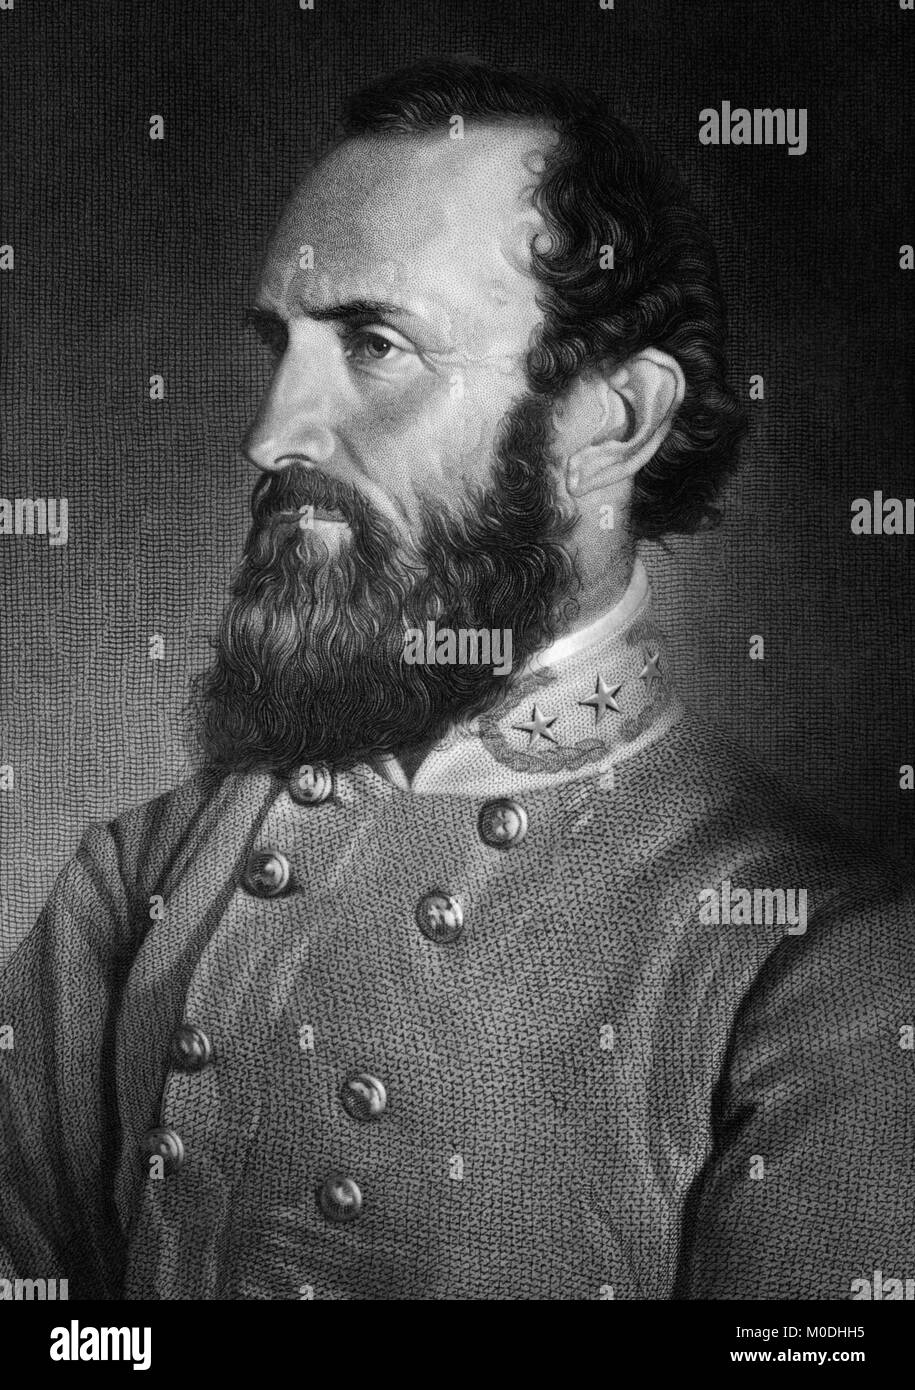 'Stonewall' Thomas Jonathan Jackson (1824-1863) était un lieutenant général pour les États confédérés d'Amérique (CSA) au cours de la guerre civile américaine, et le plus célèbre commandant confédéré après que le général Robert E. Lee. (Gravure d'un portrait photo prise le 26 avril 1869, sept jours avant d'être blessé lors de la bataille de Chancellorsville.) Banque D'Images